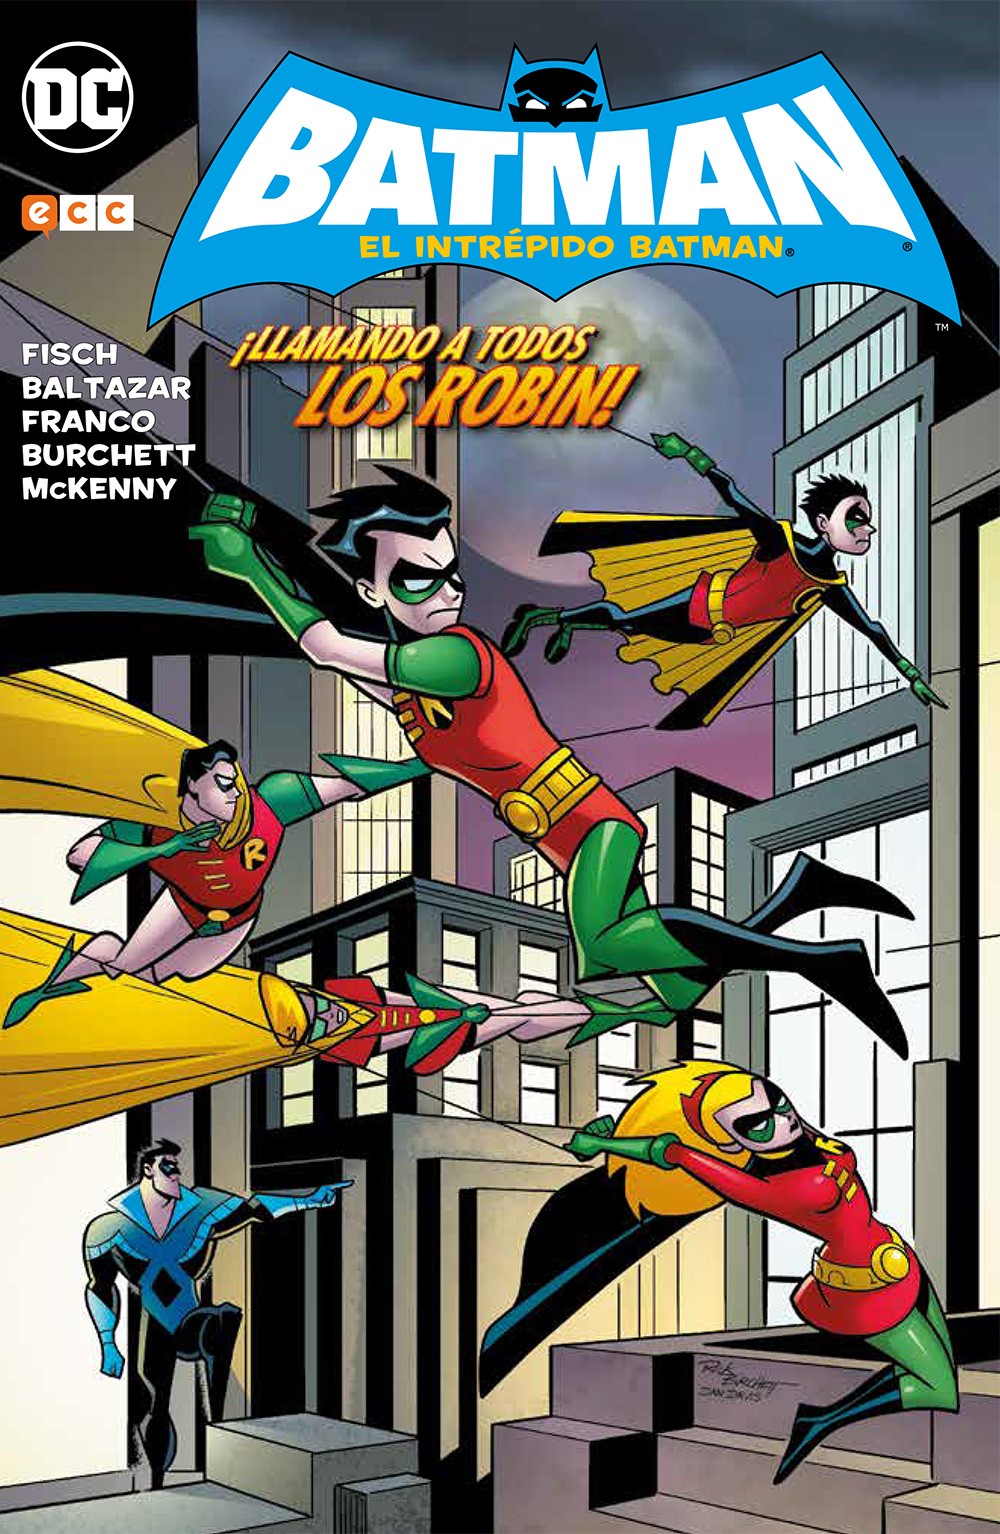 El intrépido Batman: ¡Llamando a todos los Robin! - Infinity Comics